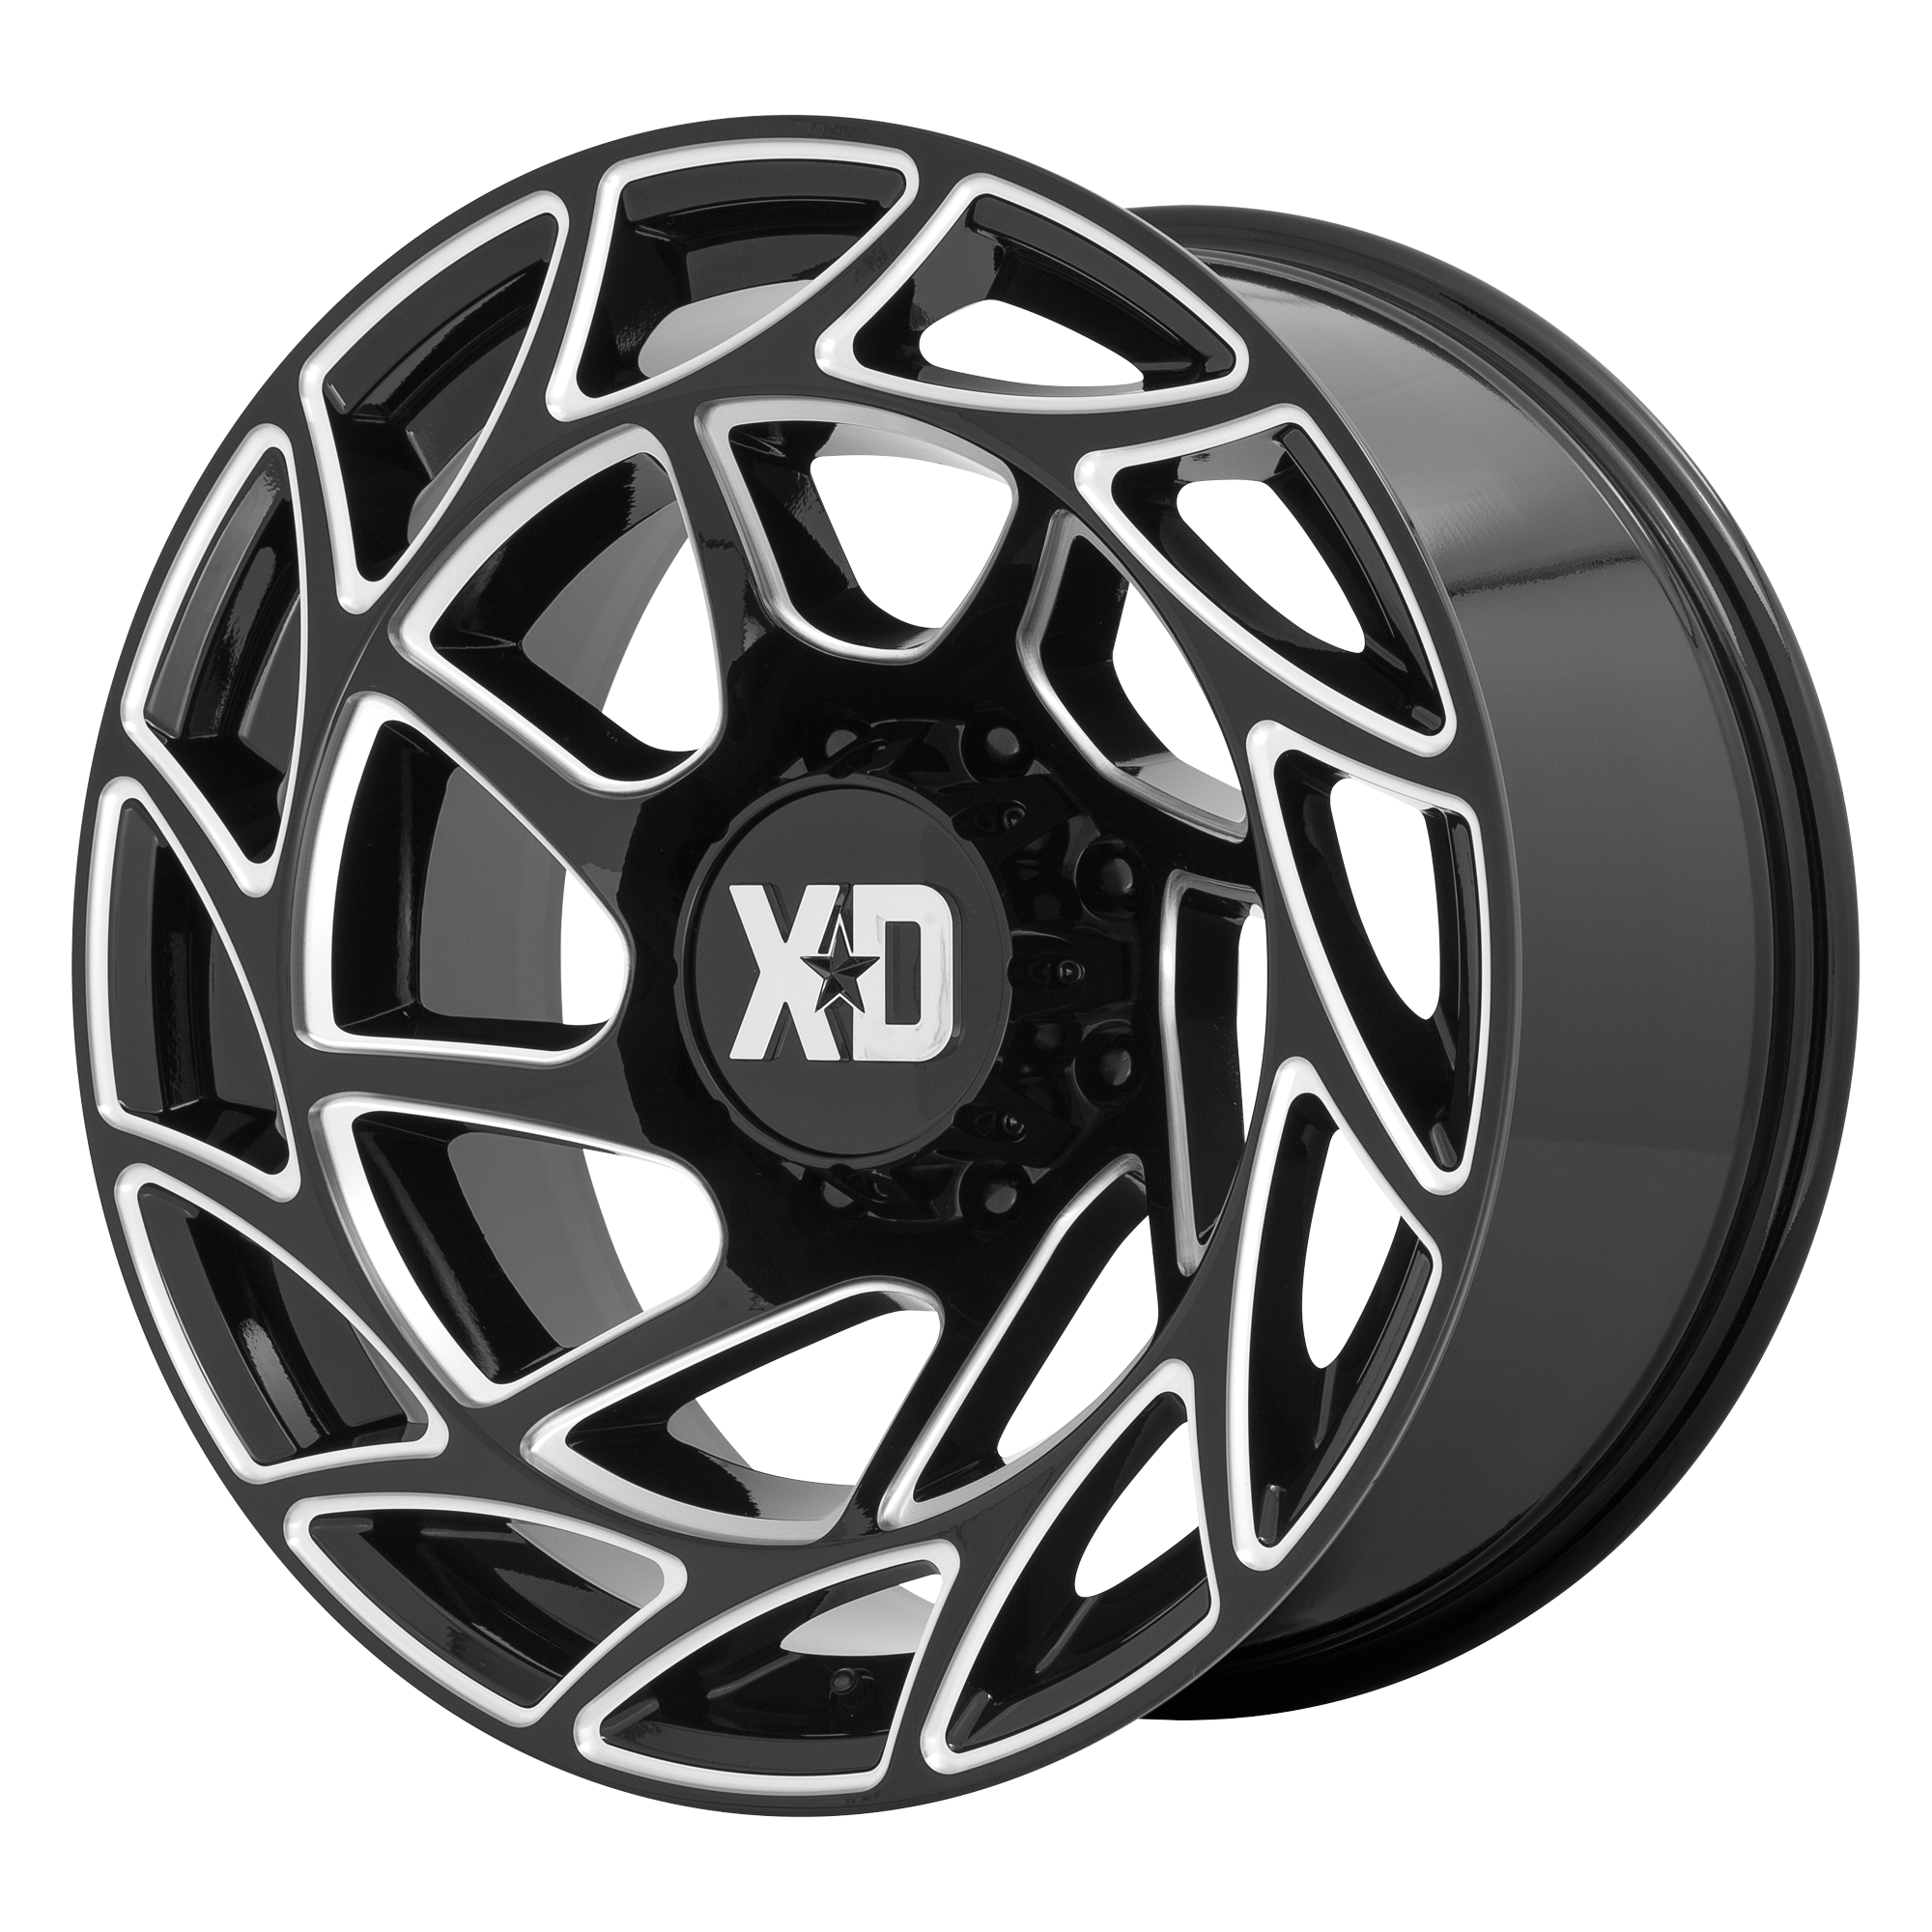 XD 20"x10" Non-Chrome Gloss Black Milled Custom Wheel ARSWCWXD86021050318N